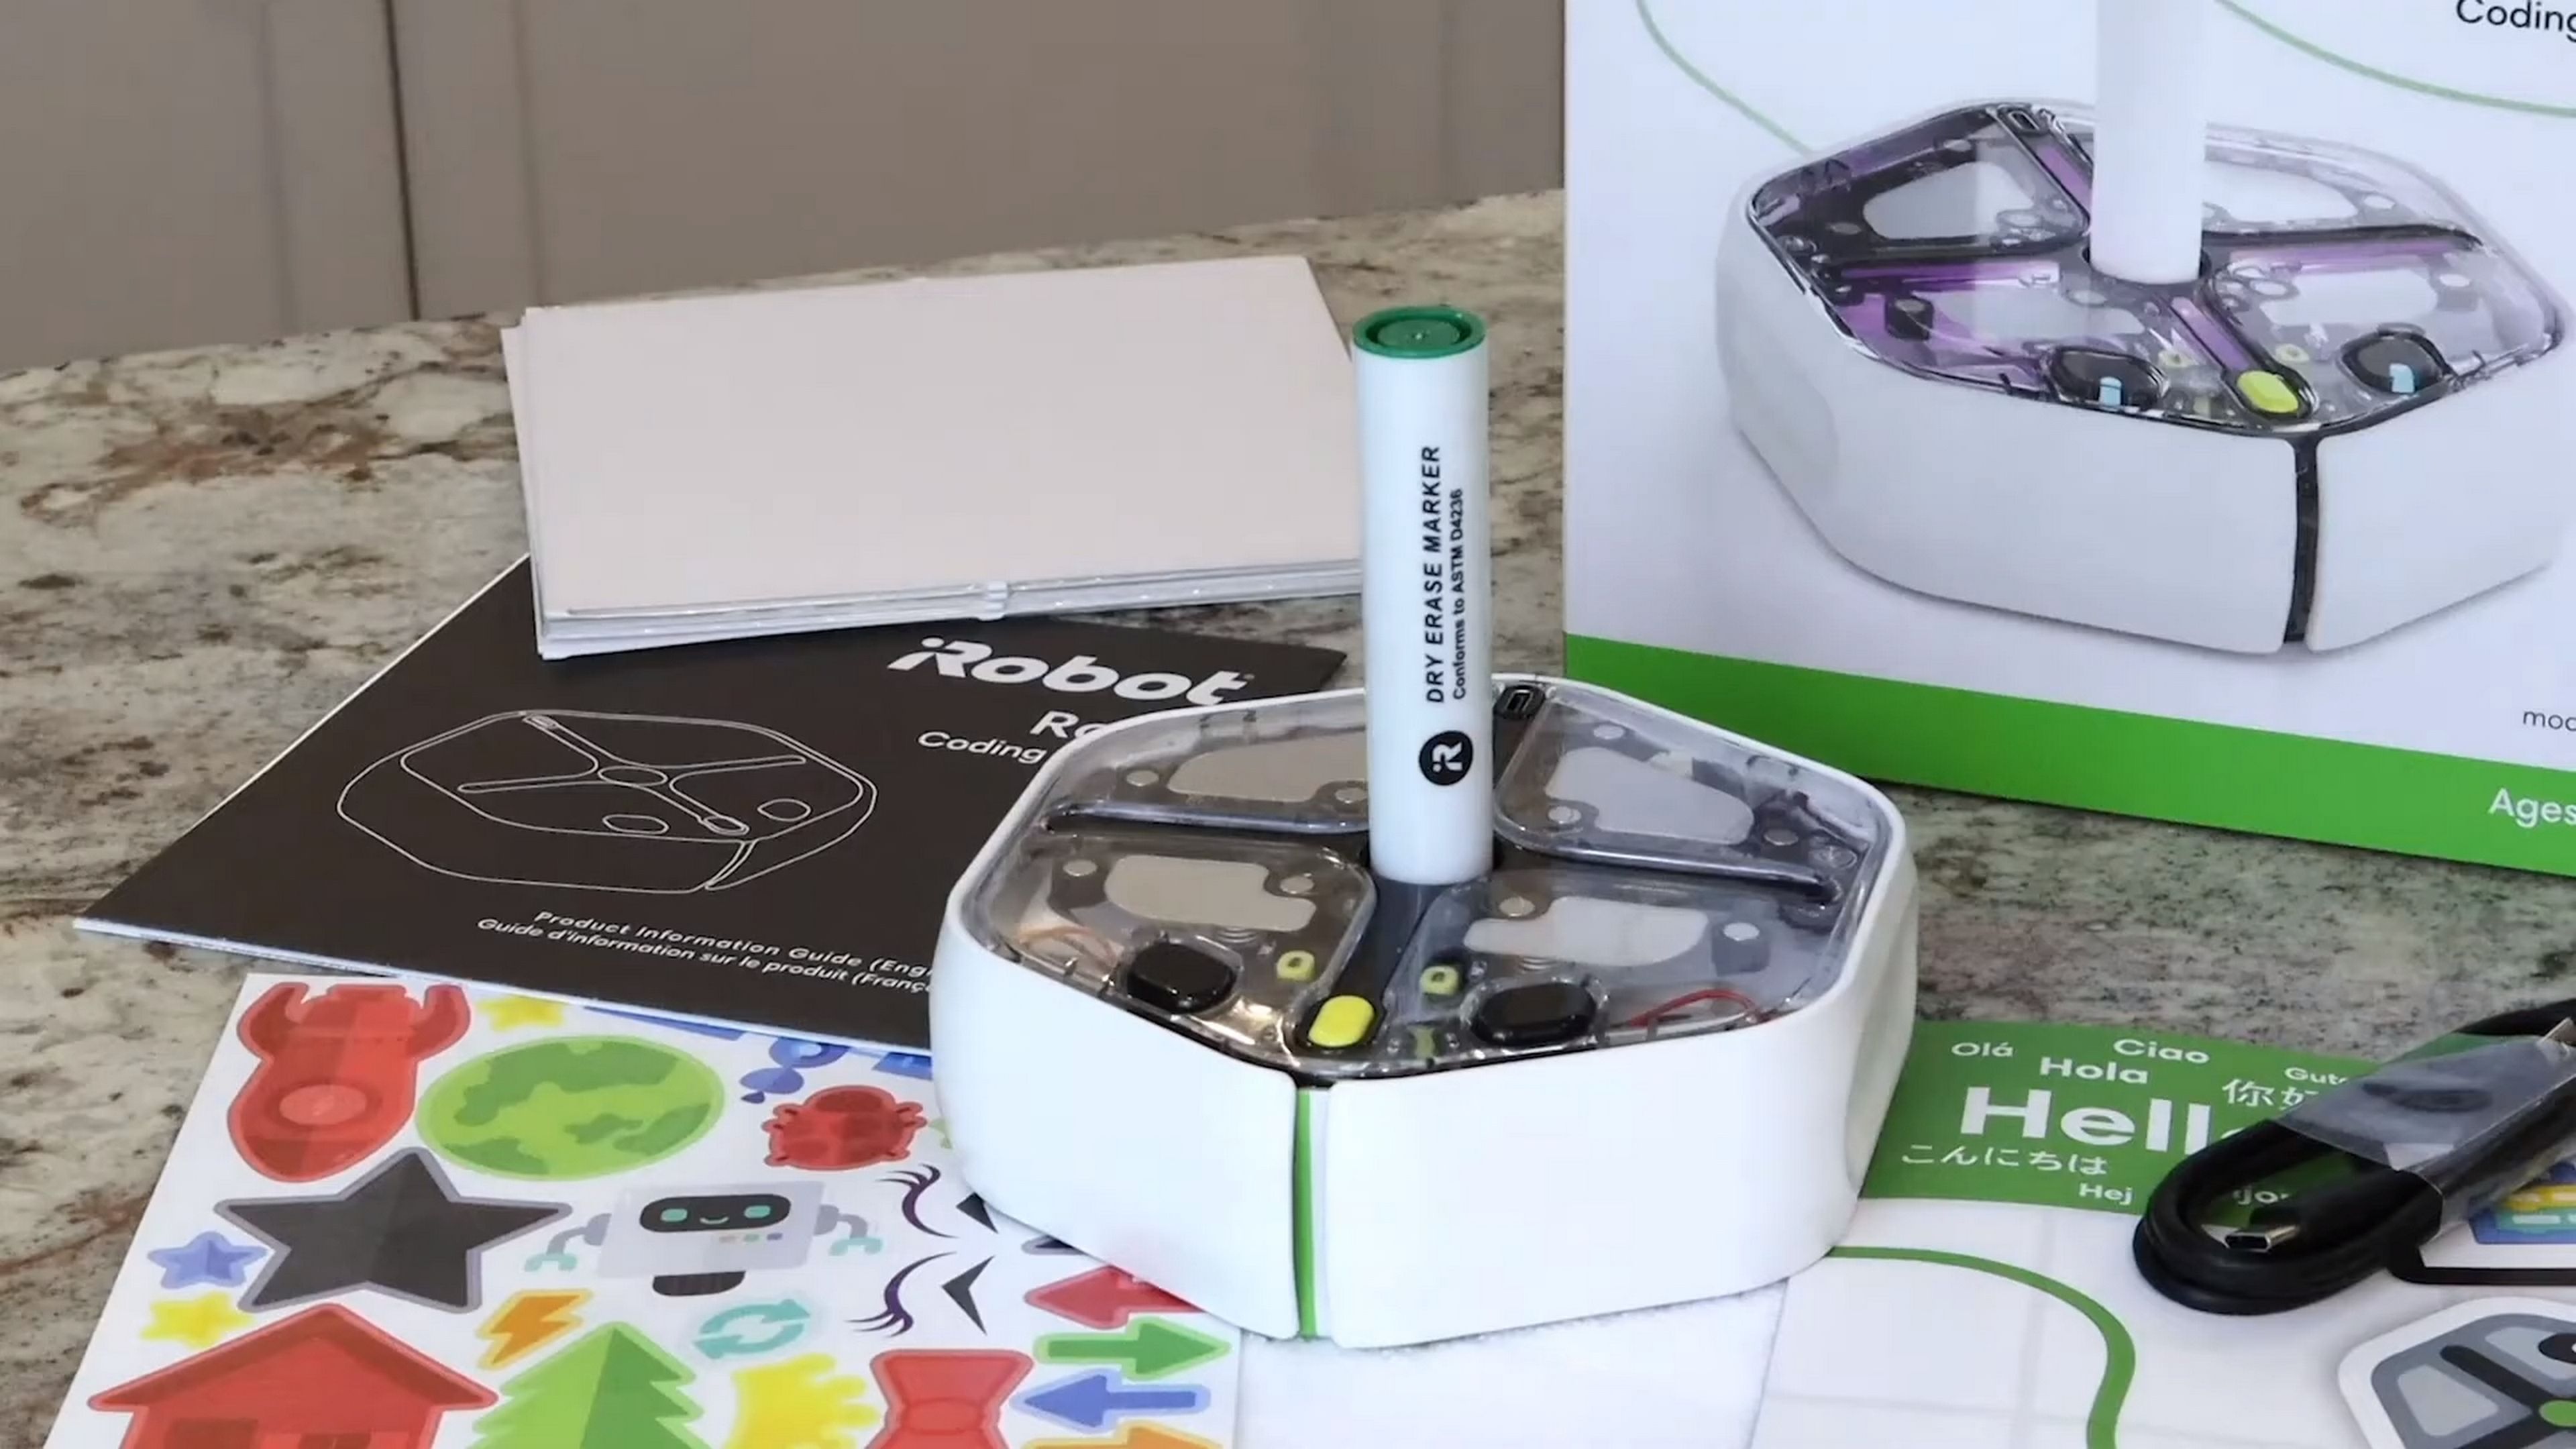 El fabricante de los robots aspirador Roomba lanza un robot educativo para aprender a programar